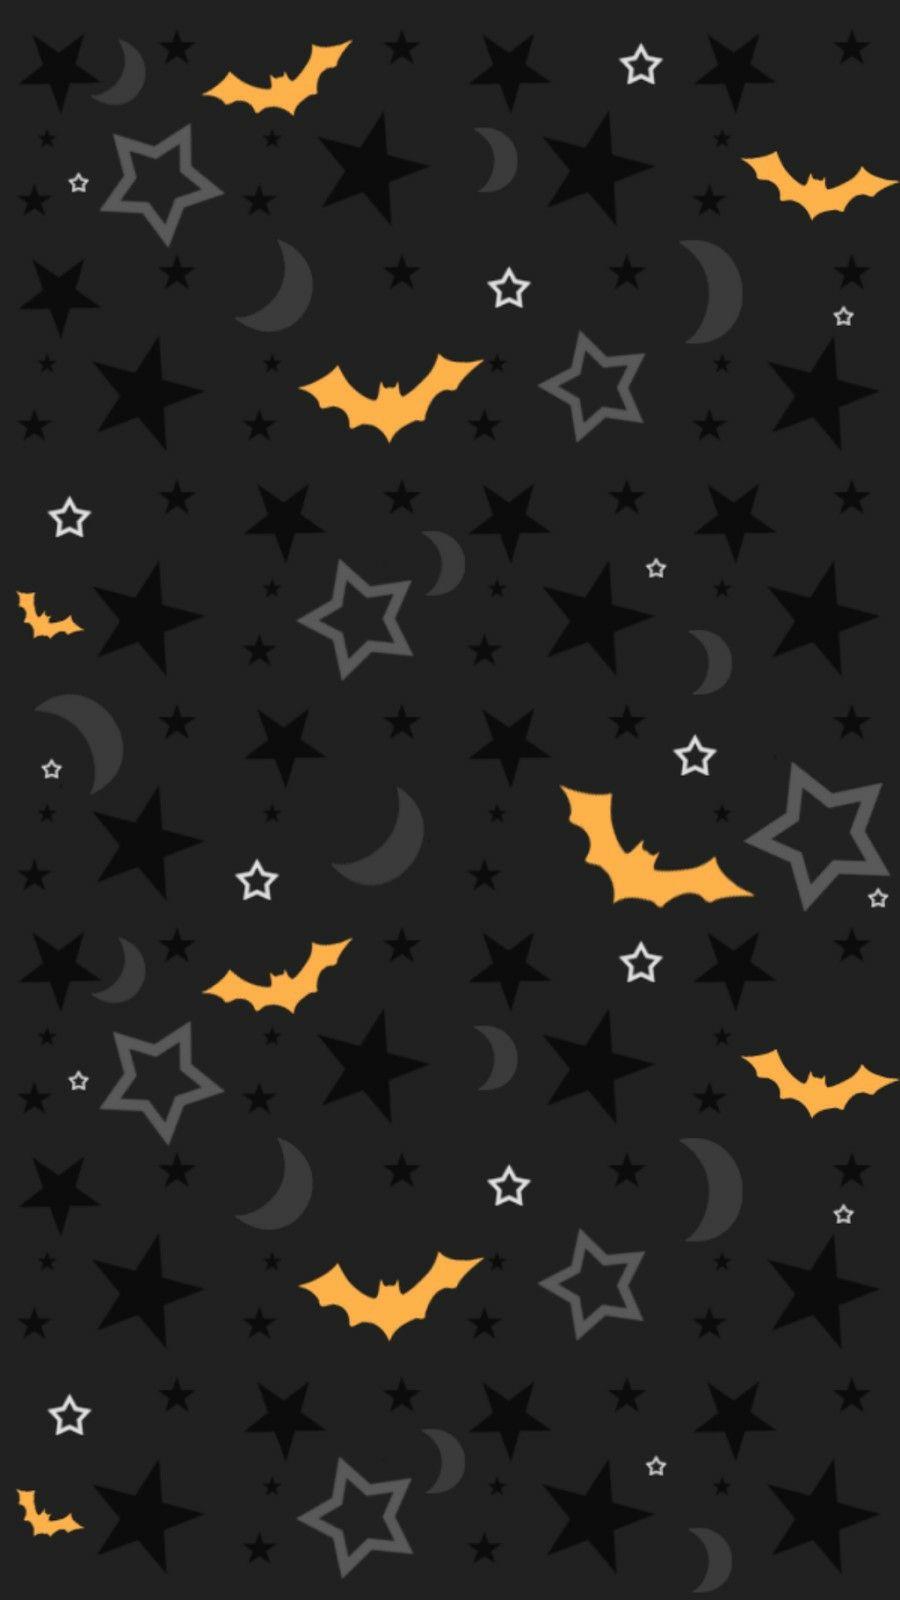 Halloween iPhone wallpaper. Halloween wallpaper iphone, Halloween wallpaper, Fall wallpaper